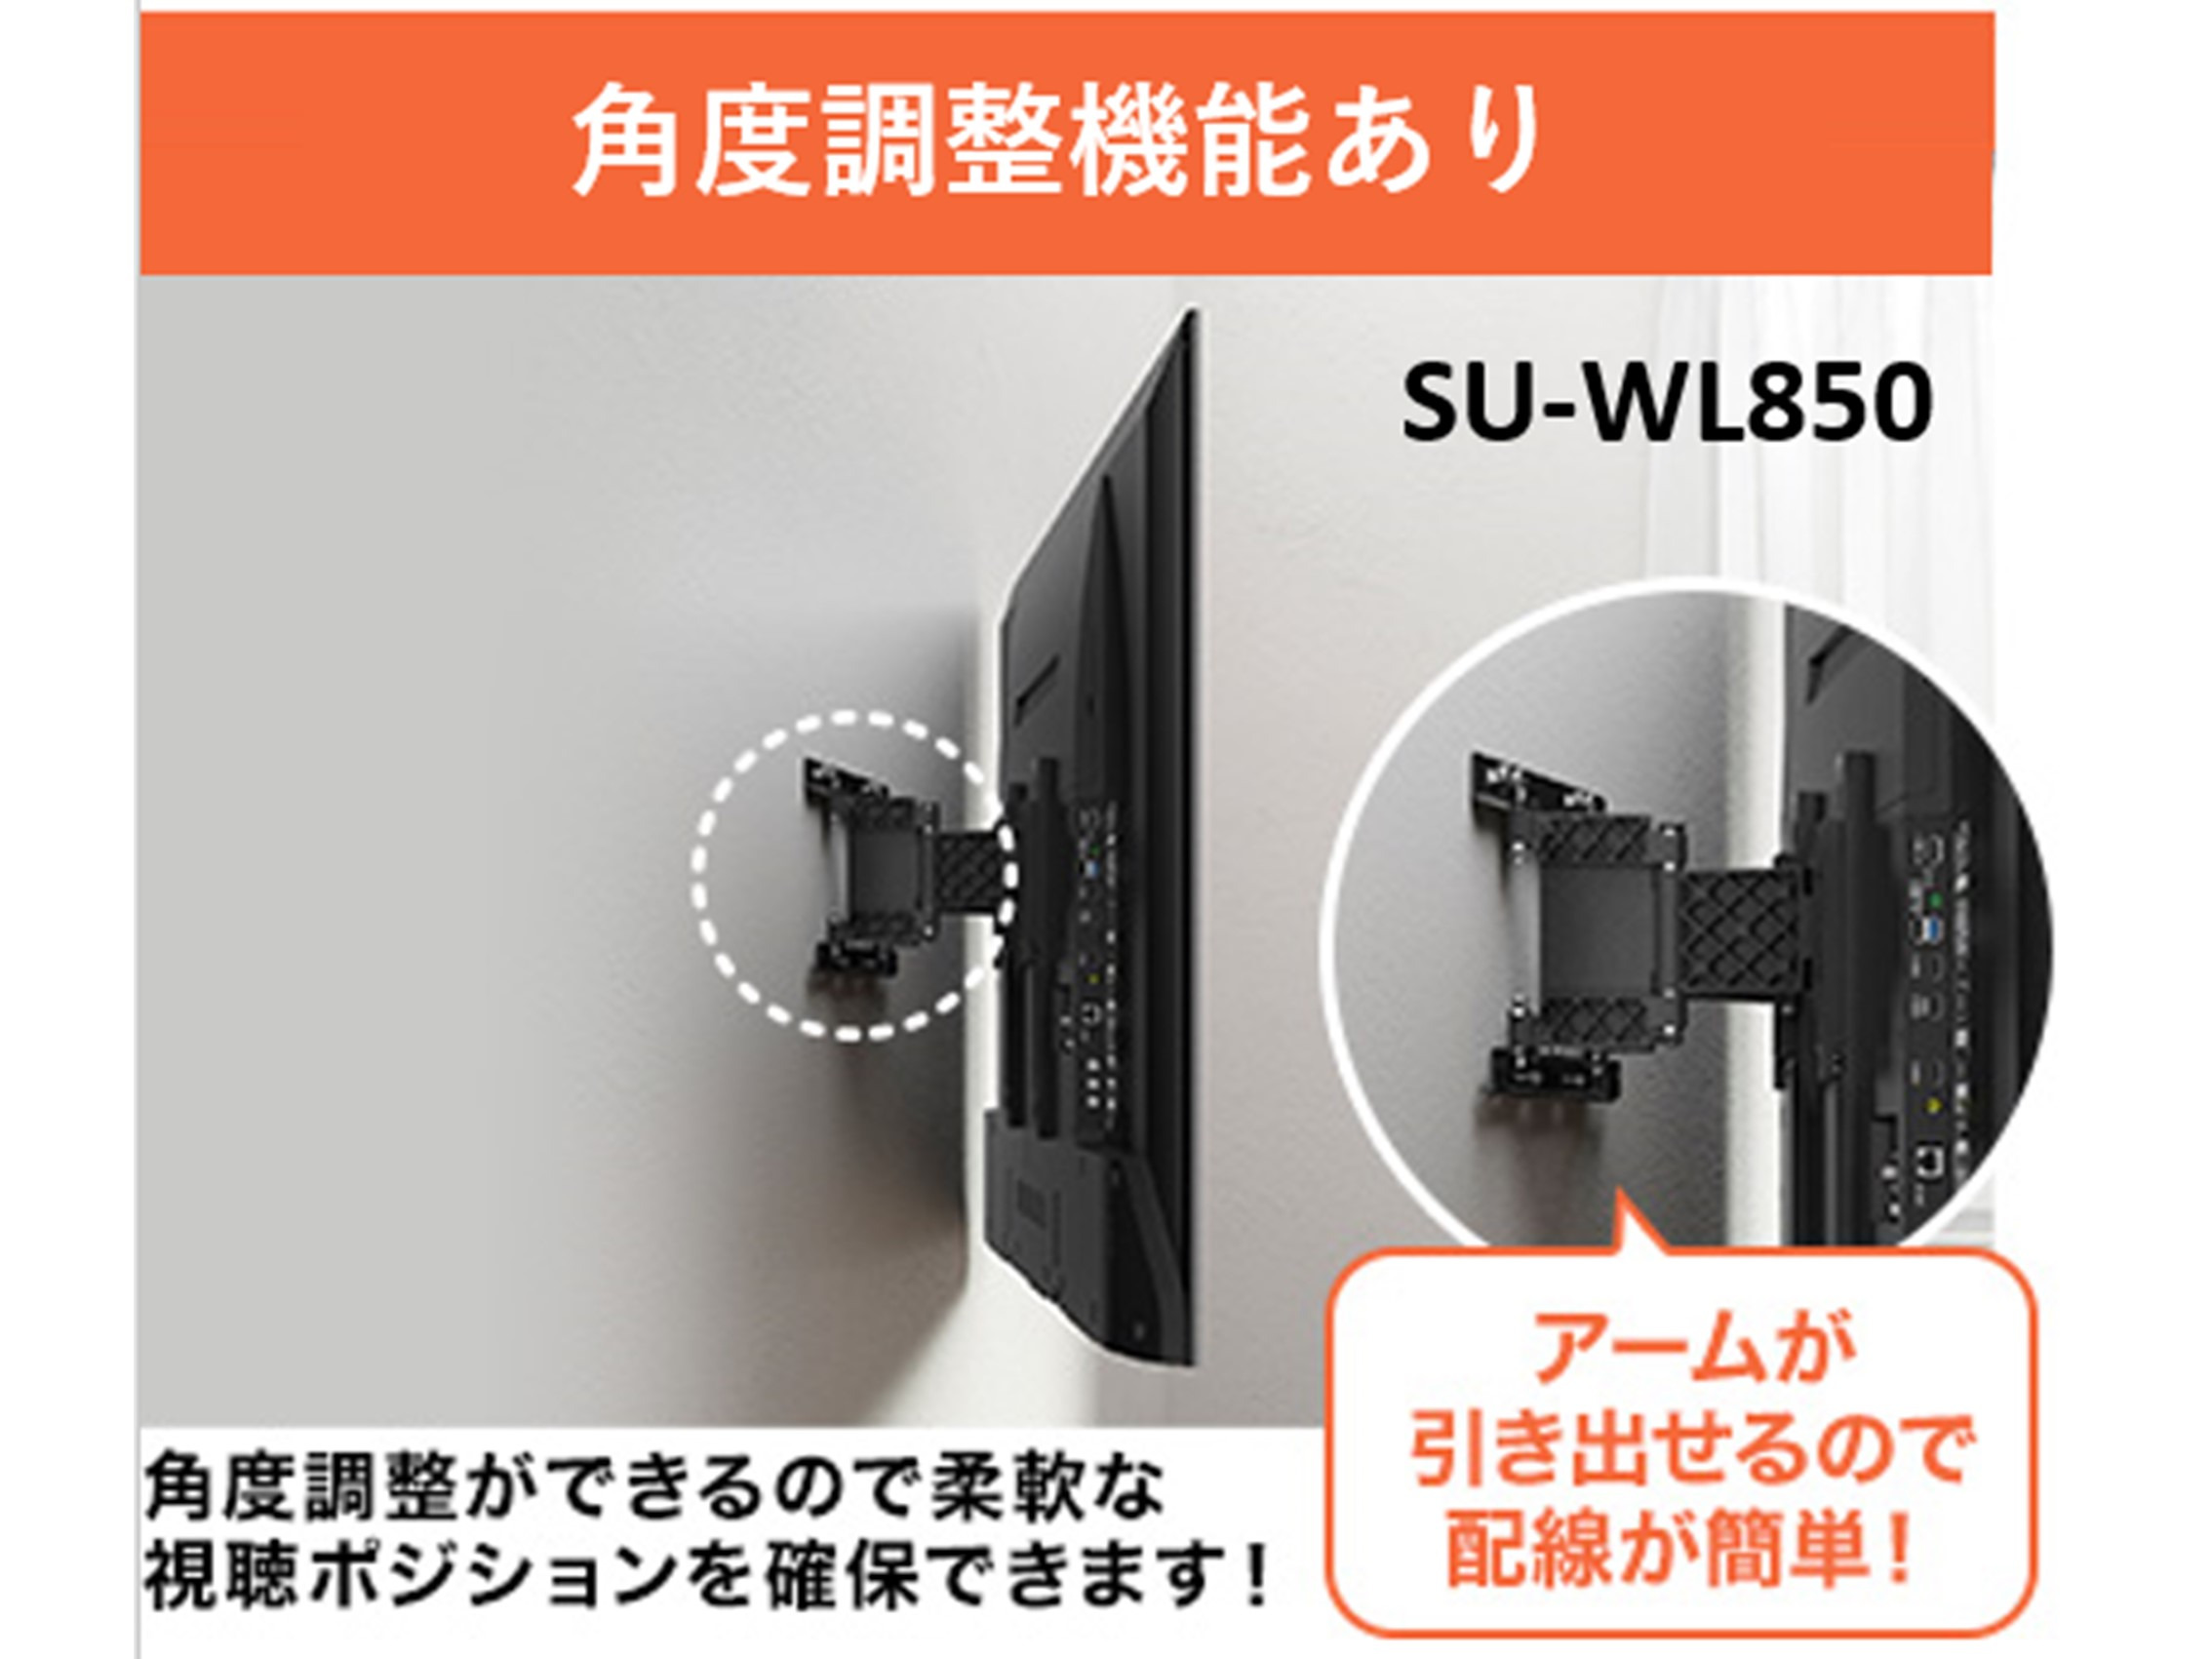 SONY テレビ壁掛け金具 SU-WL850 - テレビ/映像機器